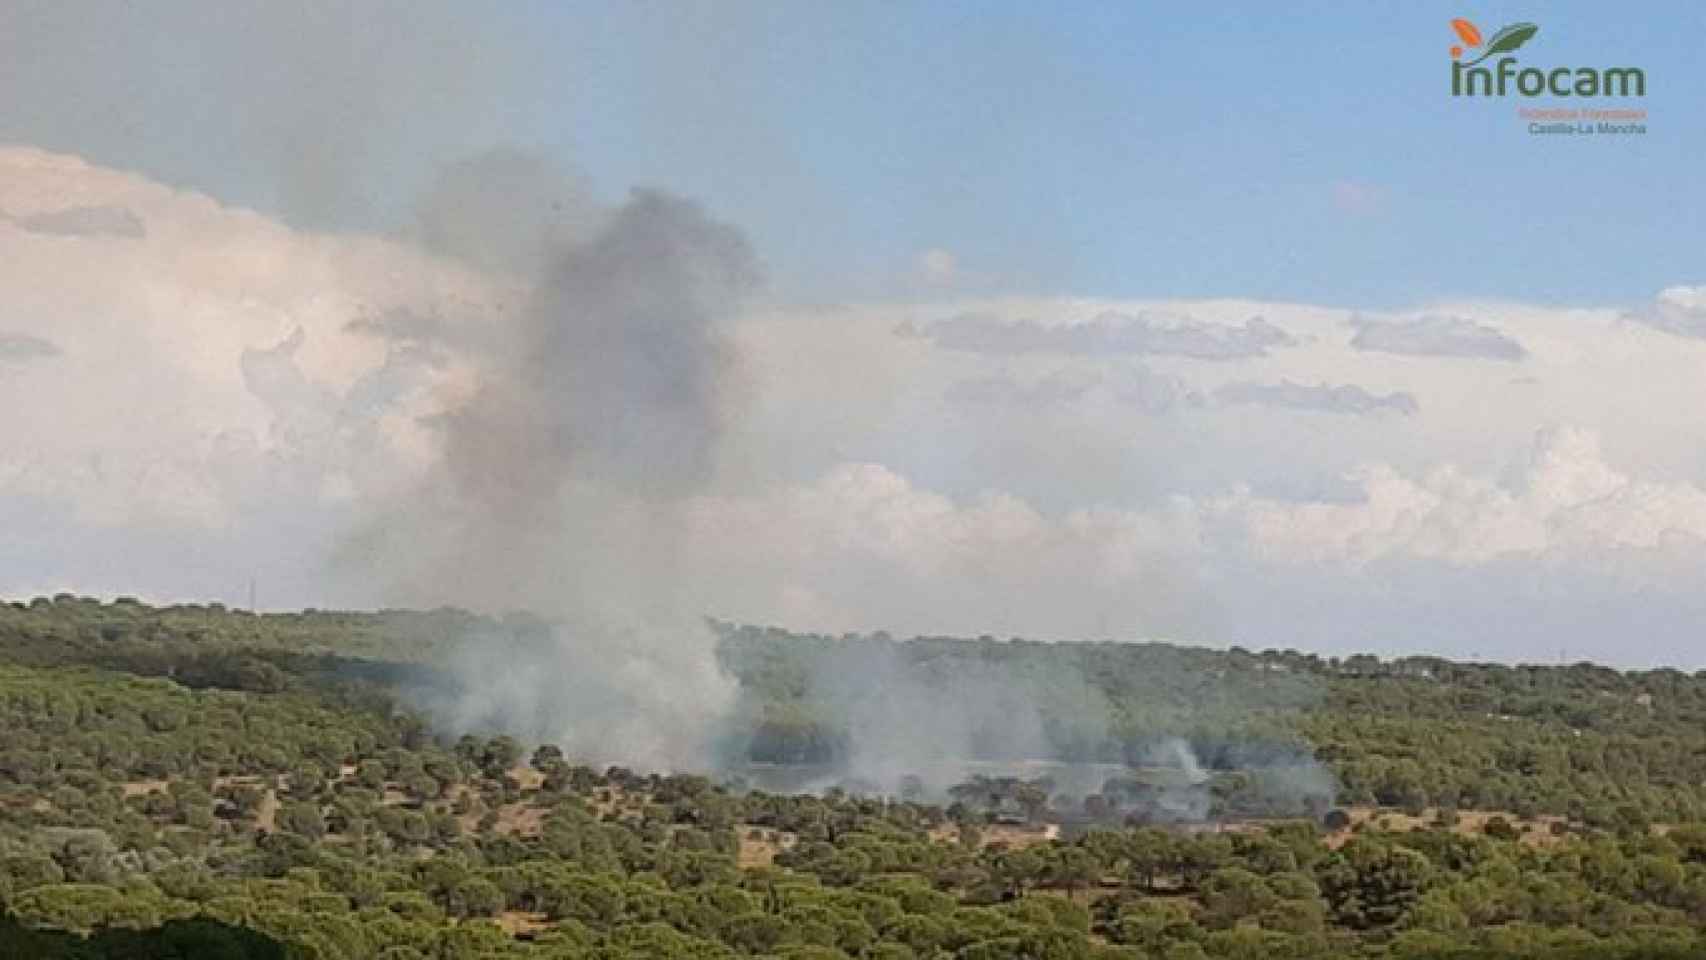 Una imagen del incendio publicada por Infocam